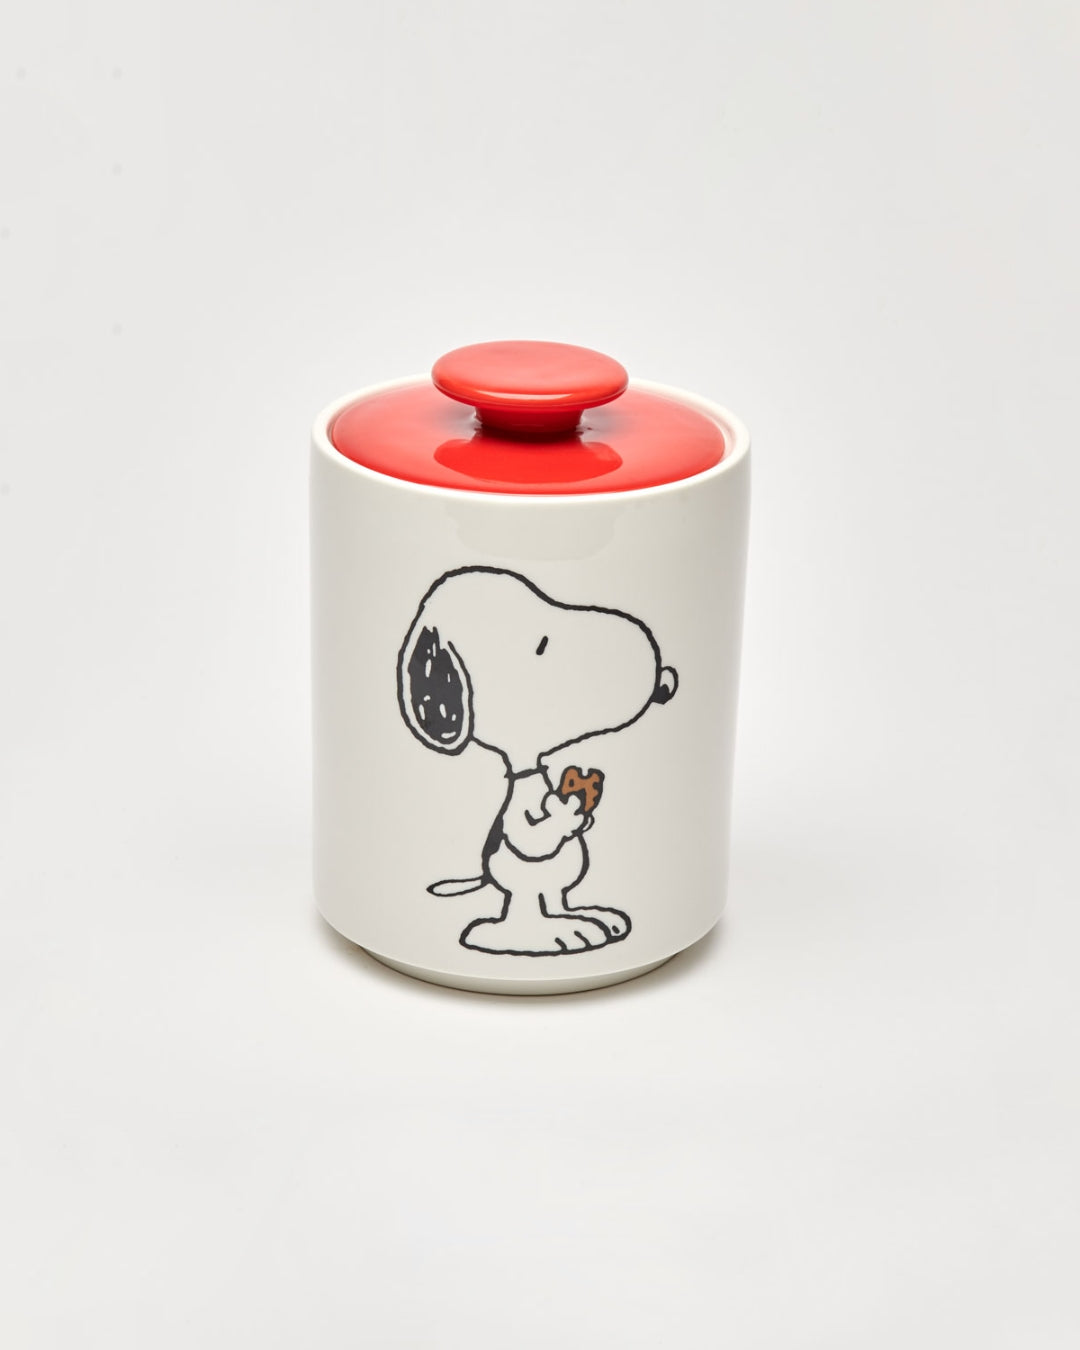 Peanuts Cookie Jar - Snoopy [PRE ORDER]